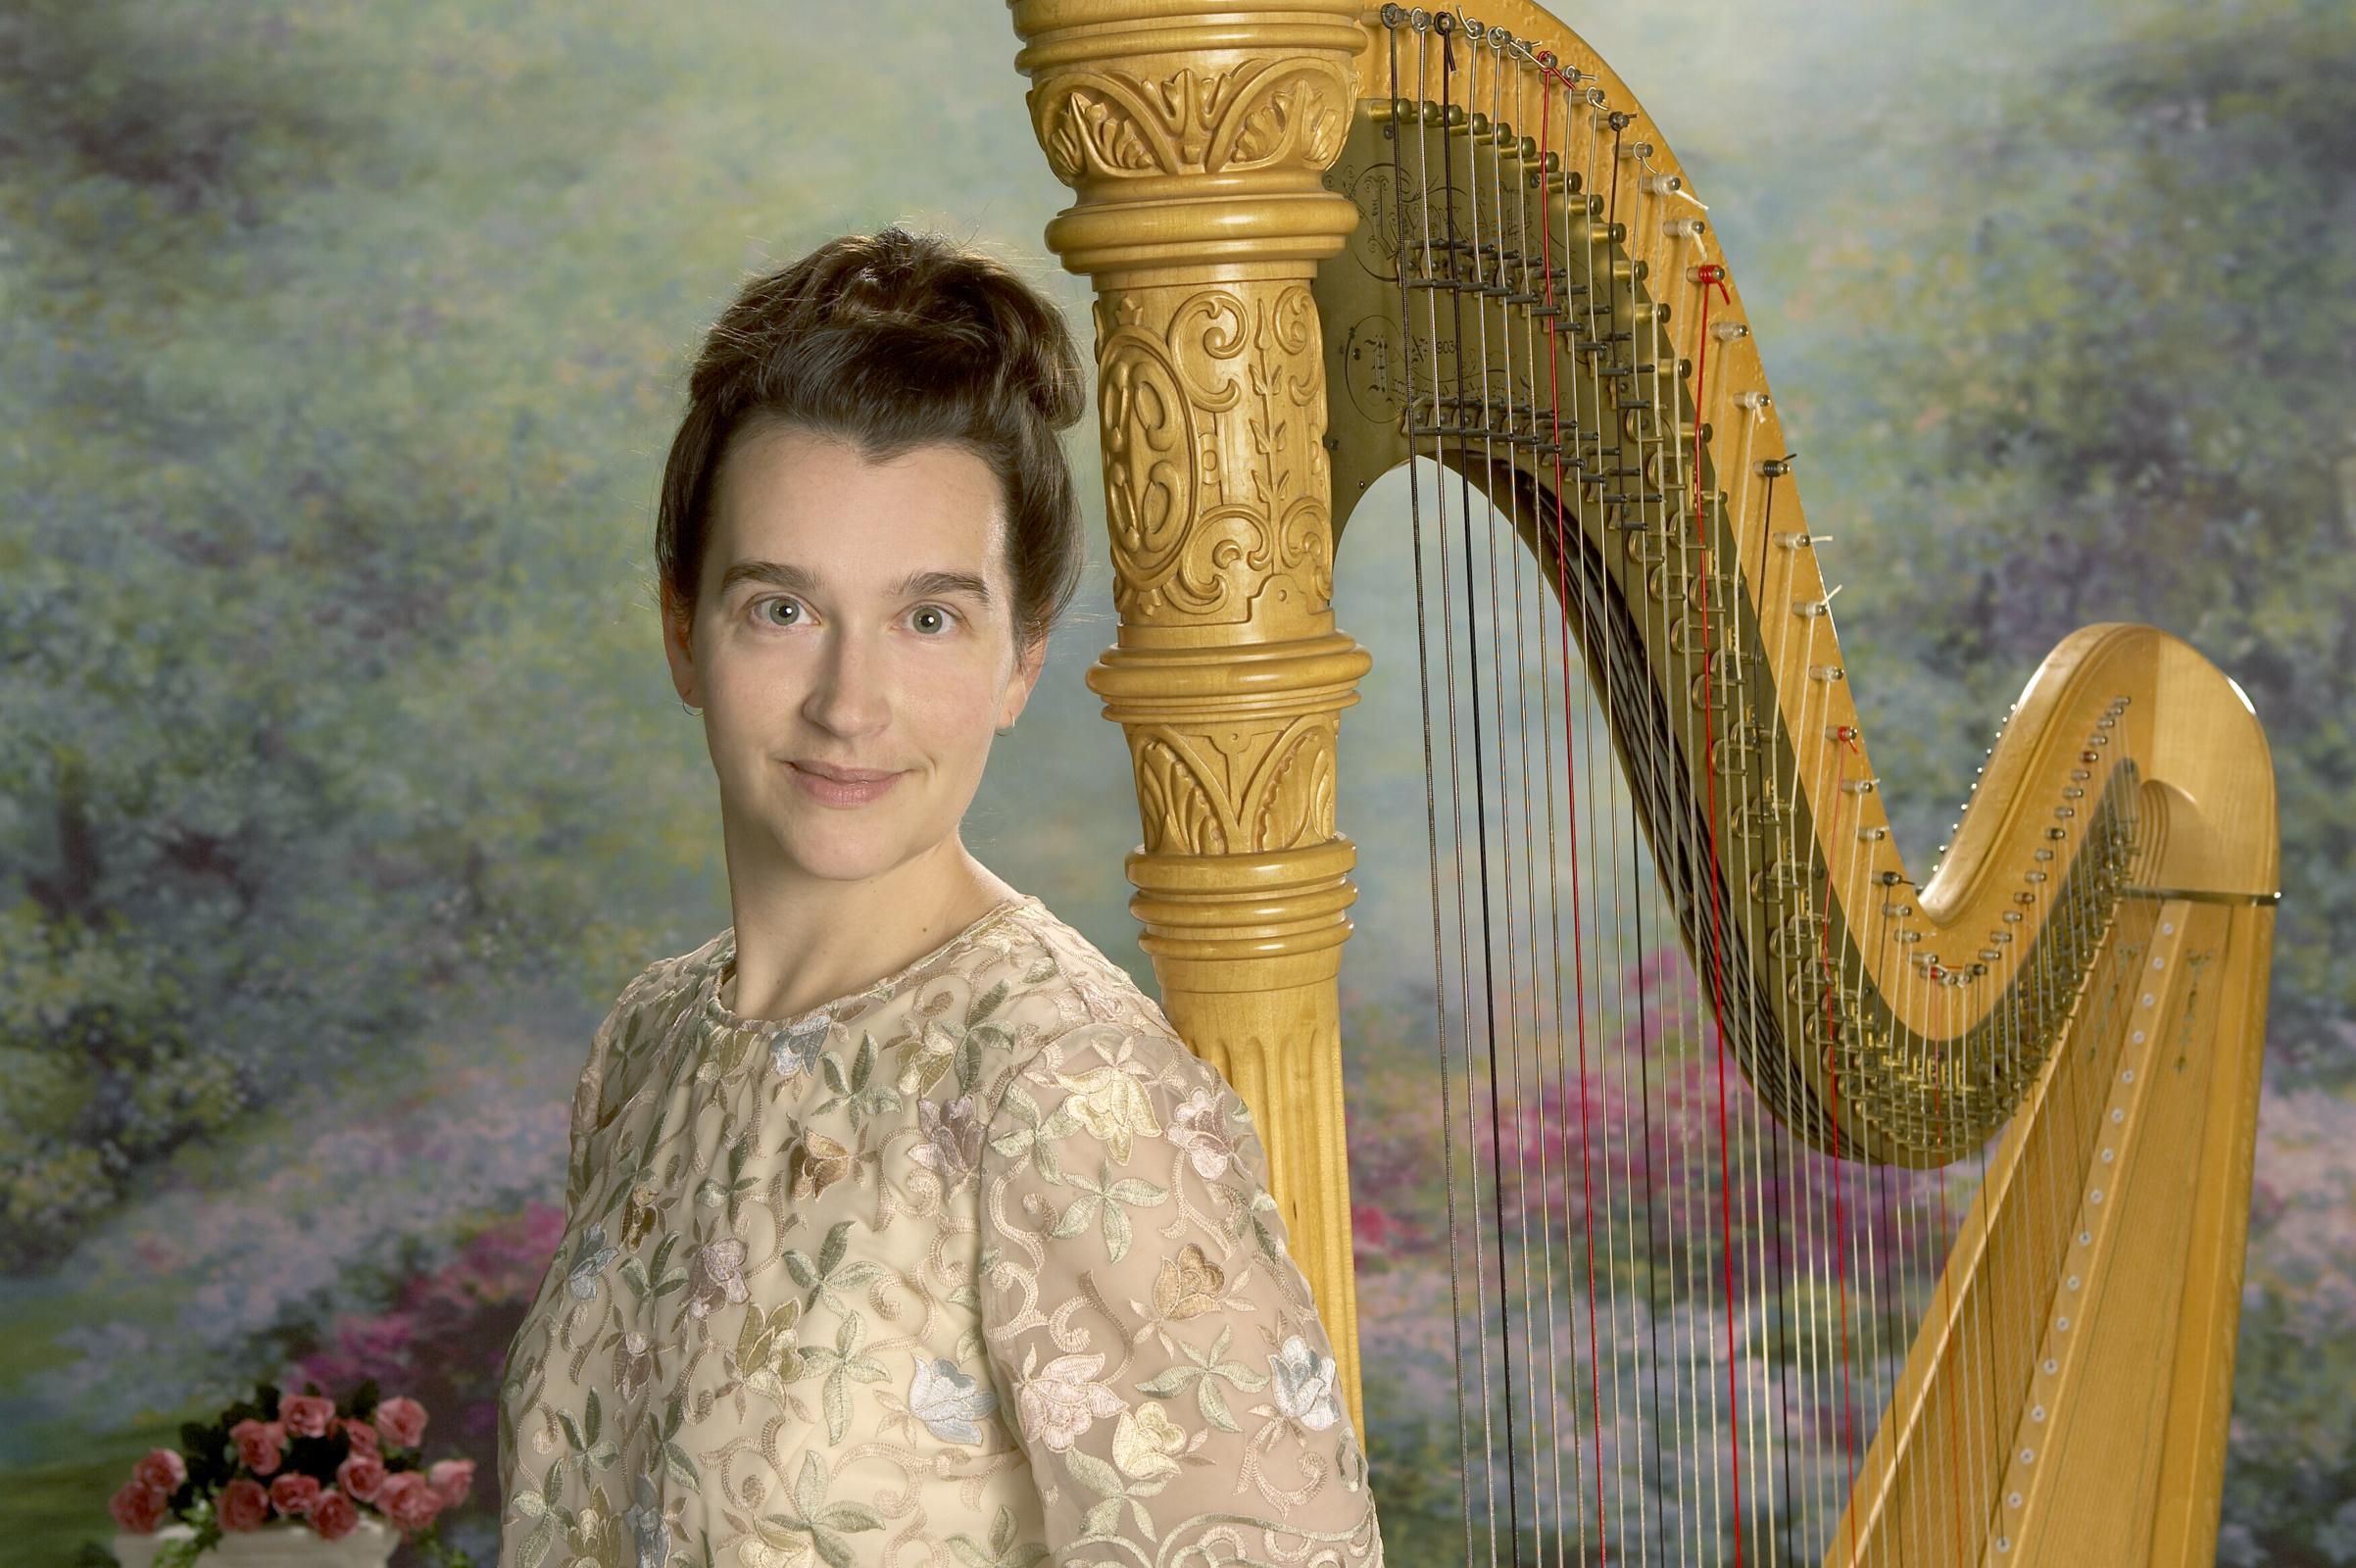 Adrienne, Calgary harpist posing next to her Harp